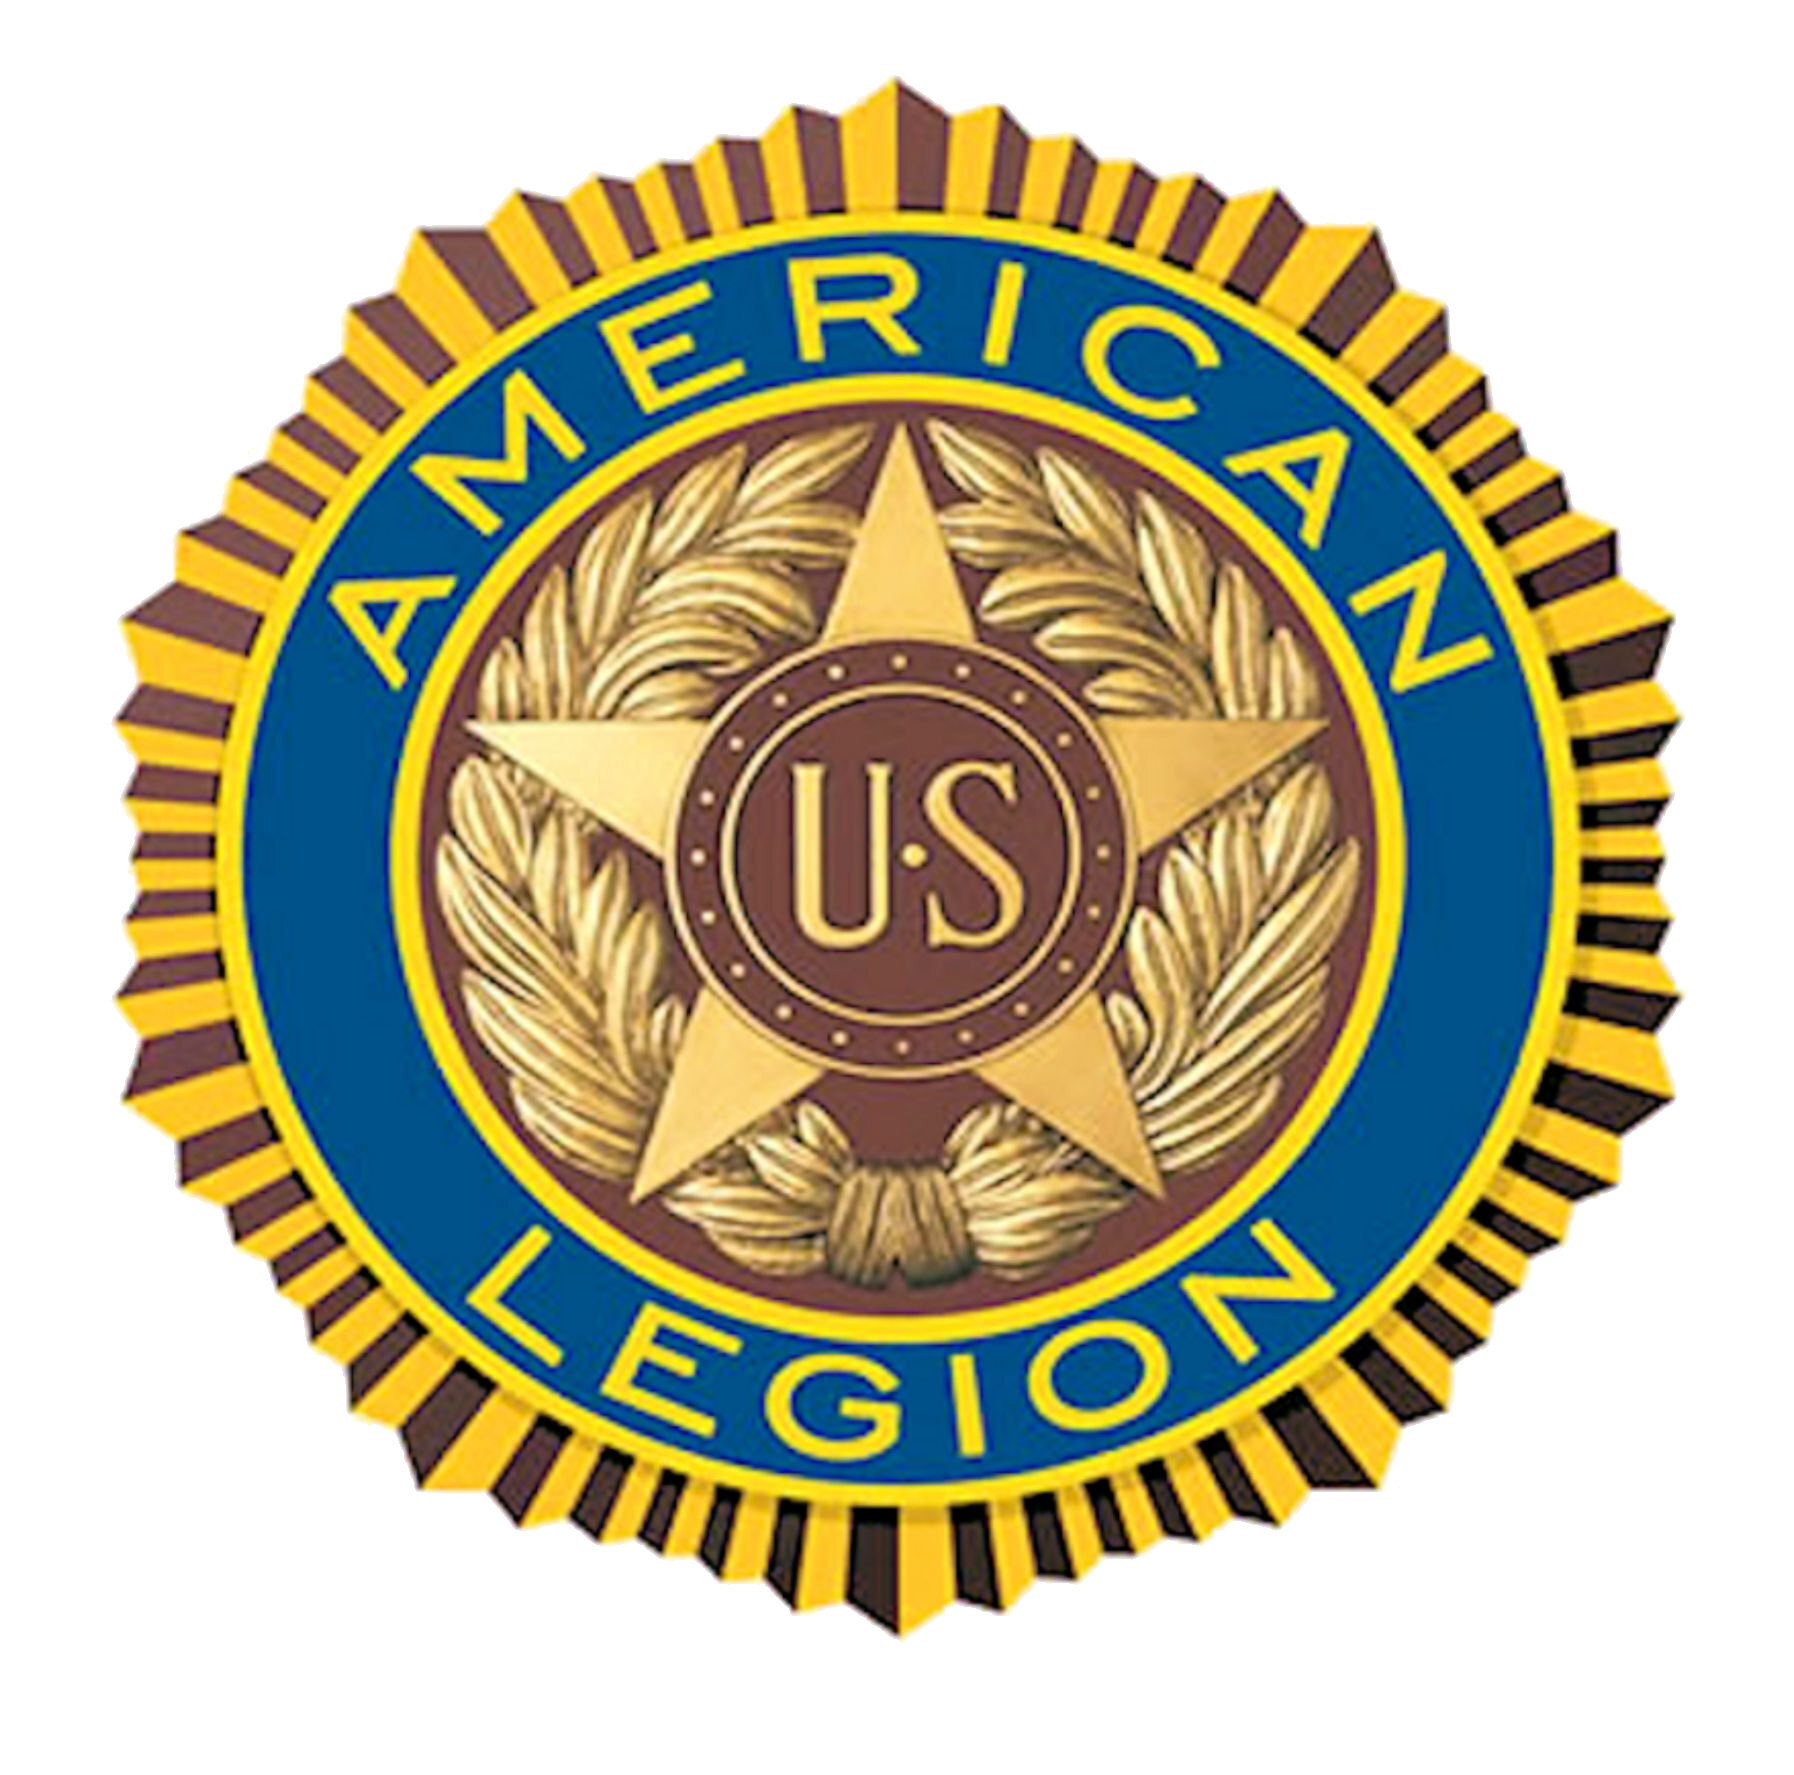 Vergennes American Legion